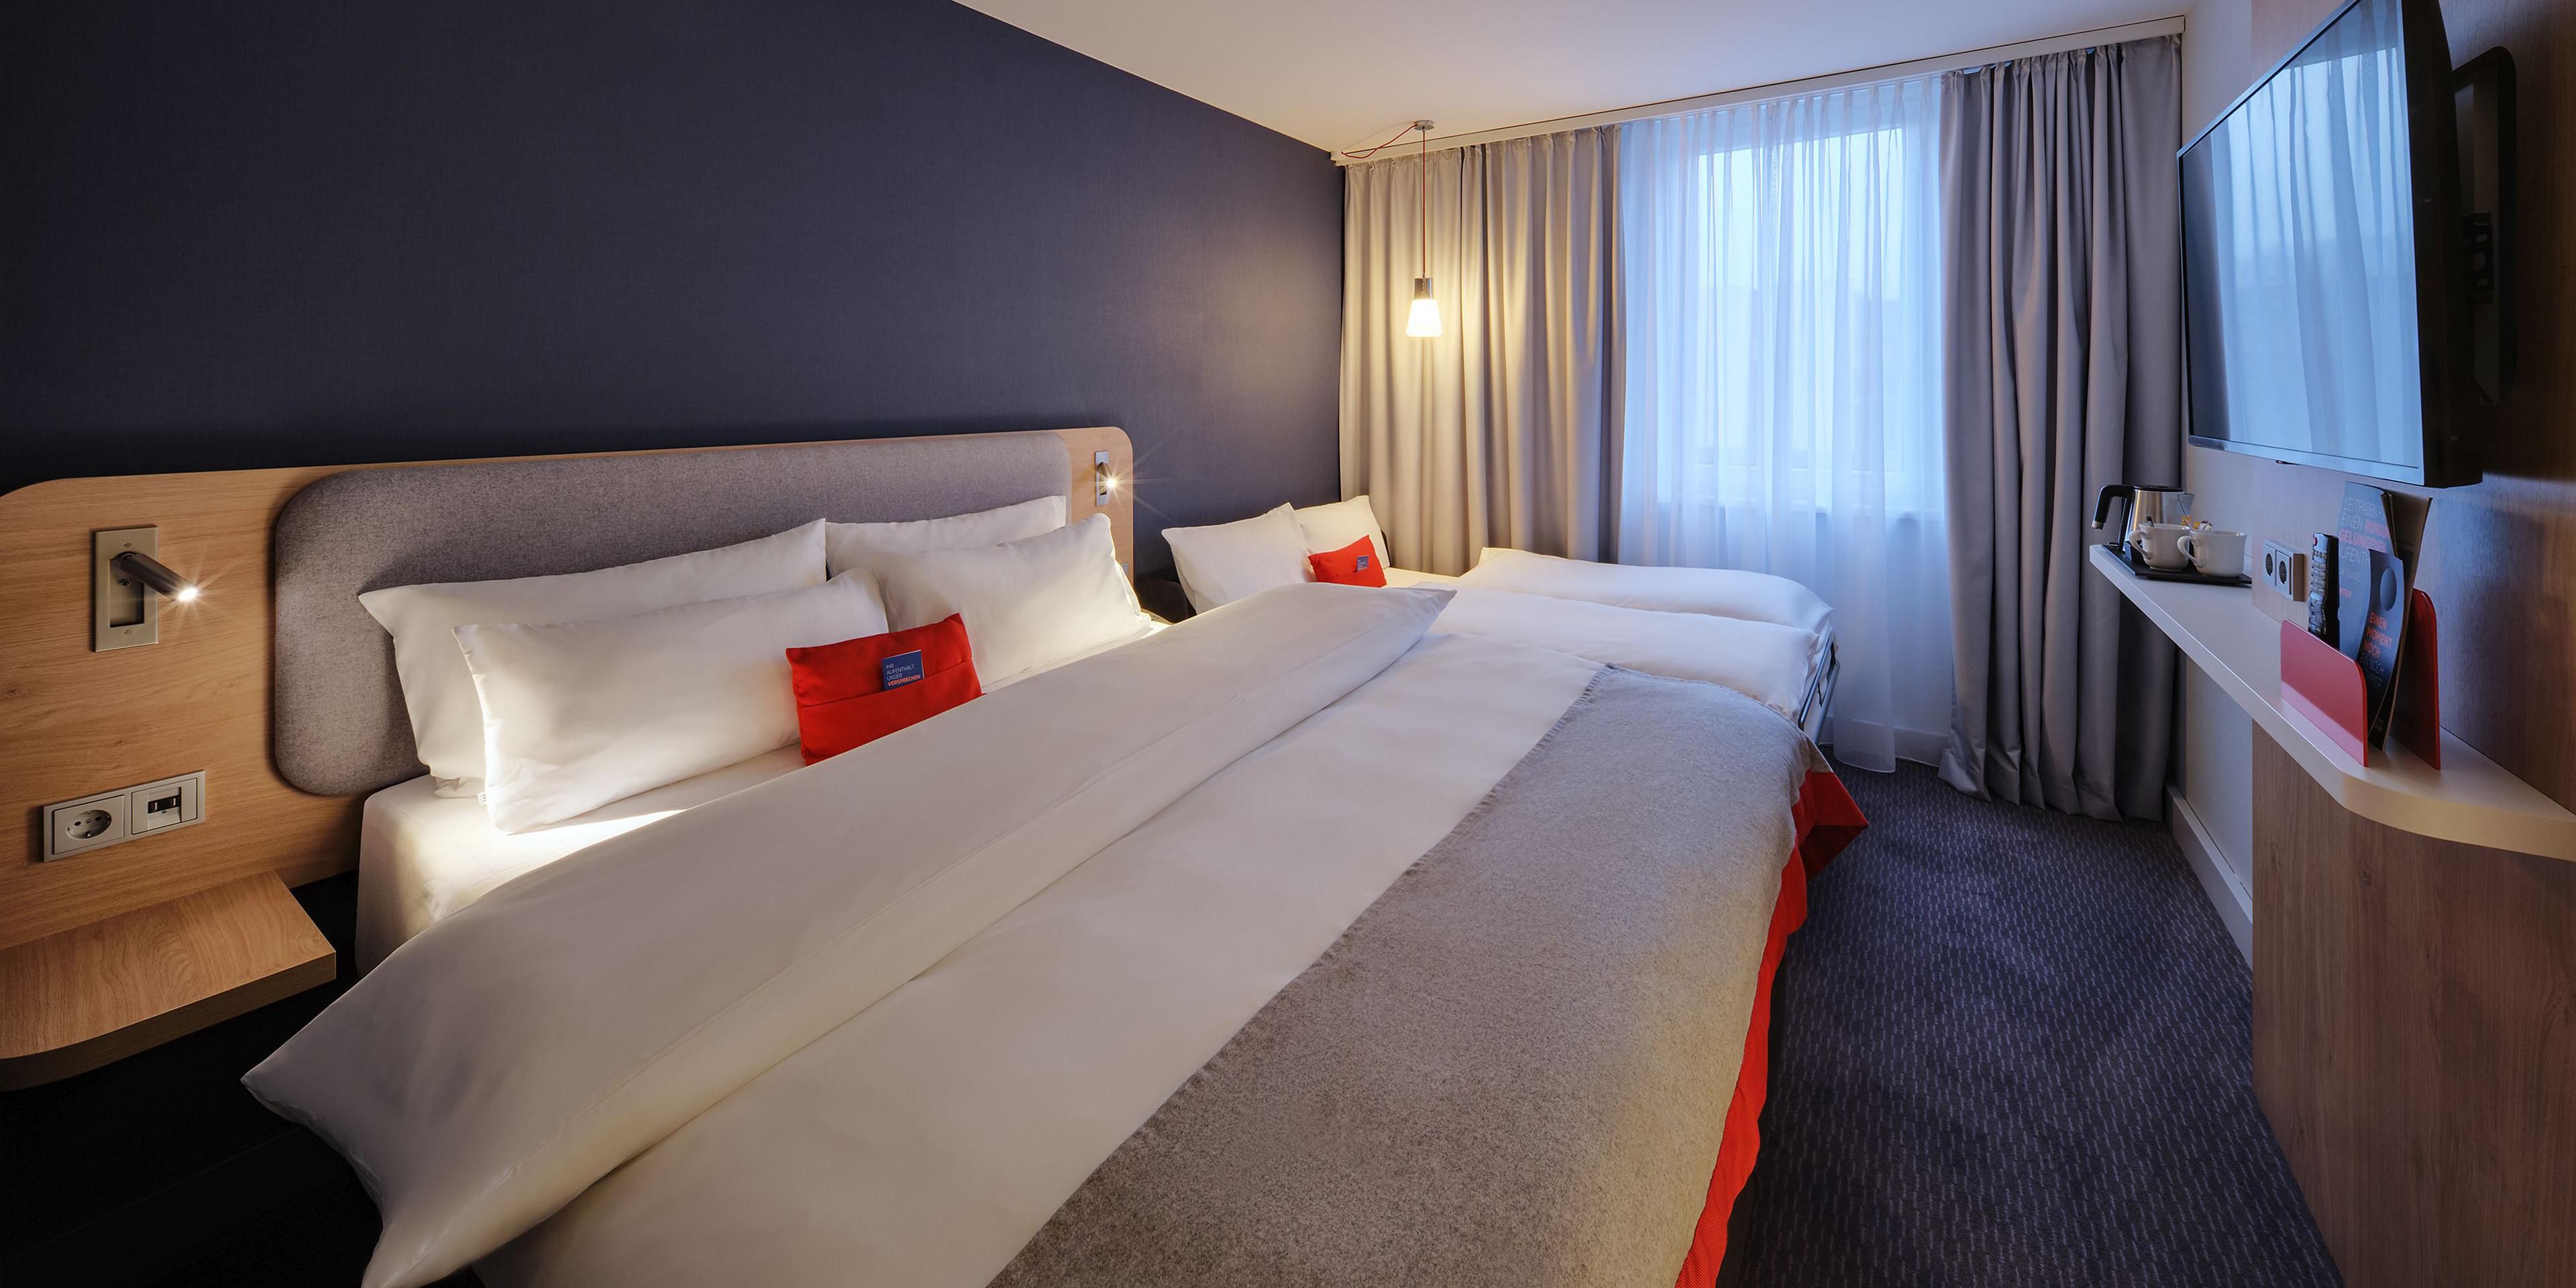 Die 256 skandinavisch inspirierten Hotelzimmer mit Klimaanlage, Powerdusche und hochwertigen Betten sind in sanften Farbtönen mit hellen Holzelementen und roten Akzenten gestaltet. Geschäftsreisende können einen Tisch mit Bürostuhl nutzen, und die Zimmer mit Schlafsofas sind ideal für Familien.